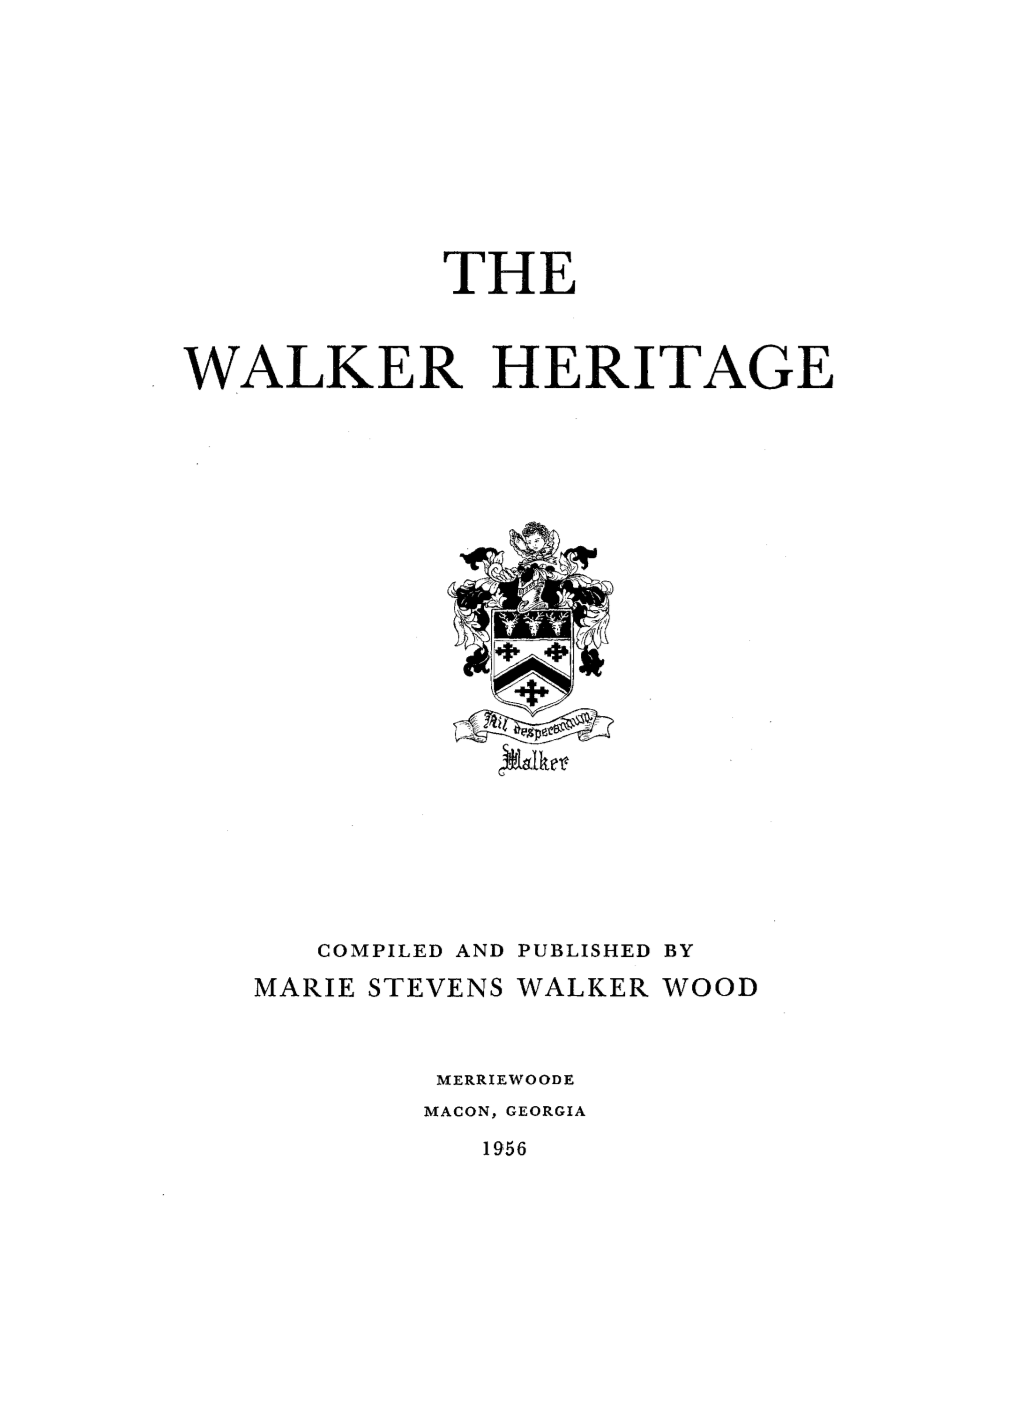 The Walker Heritage